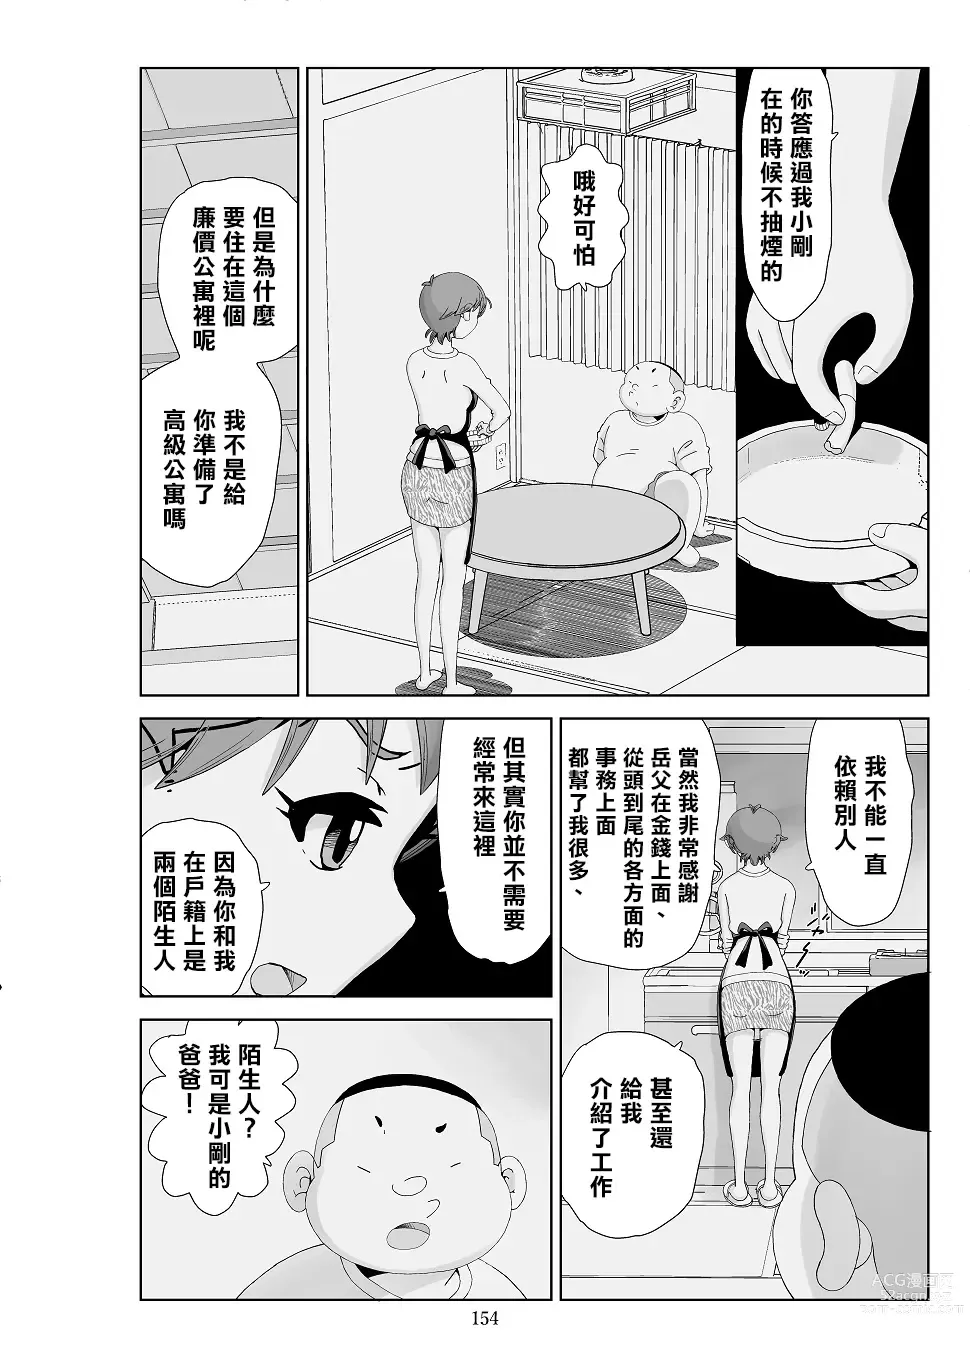 Page 156 of doujinshi Futoshi 3